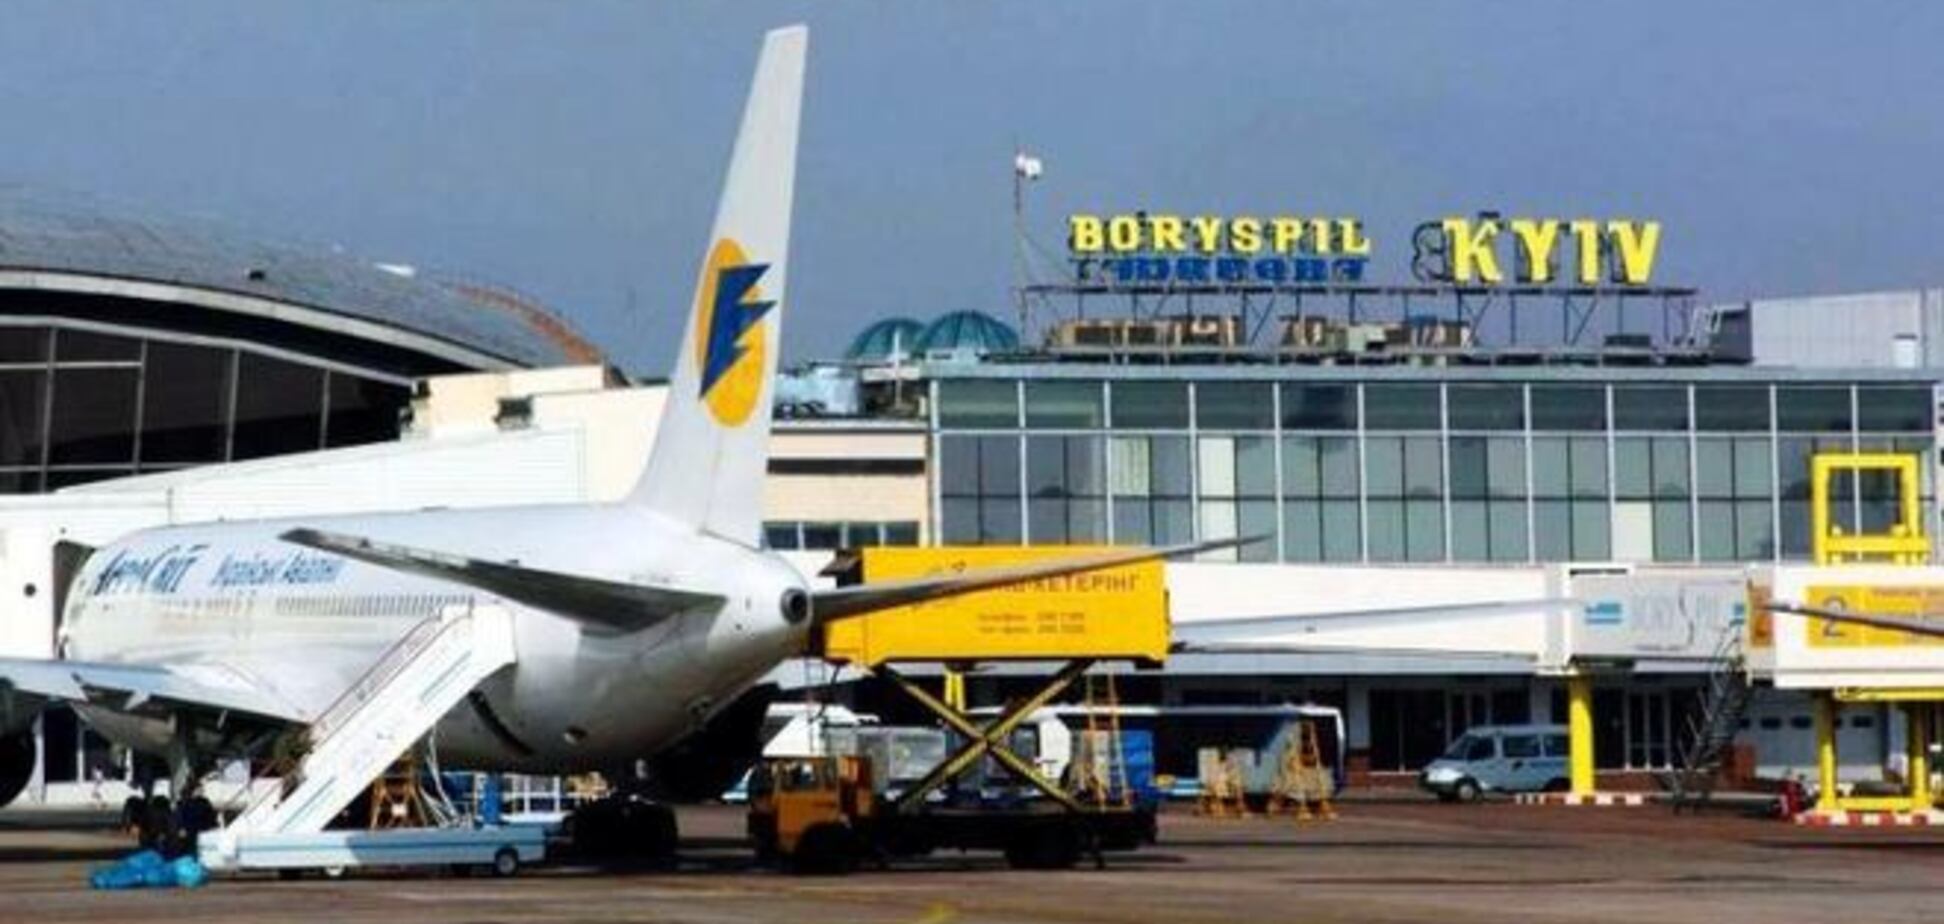 Аэропорт 'Борисполь' связал Юрушева, Иванчука и Яценюка